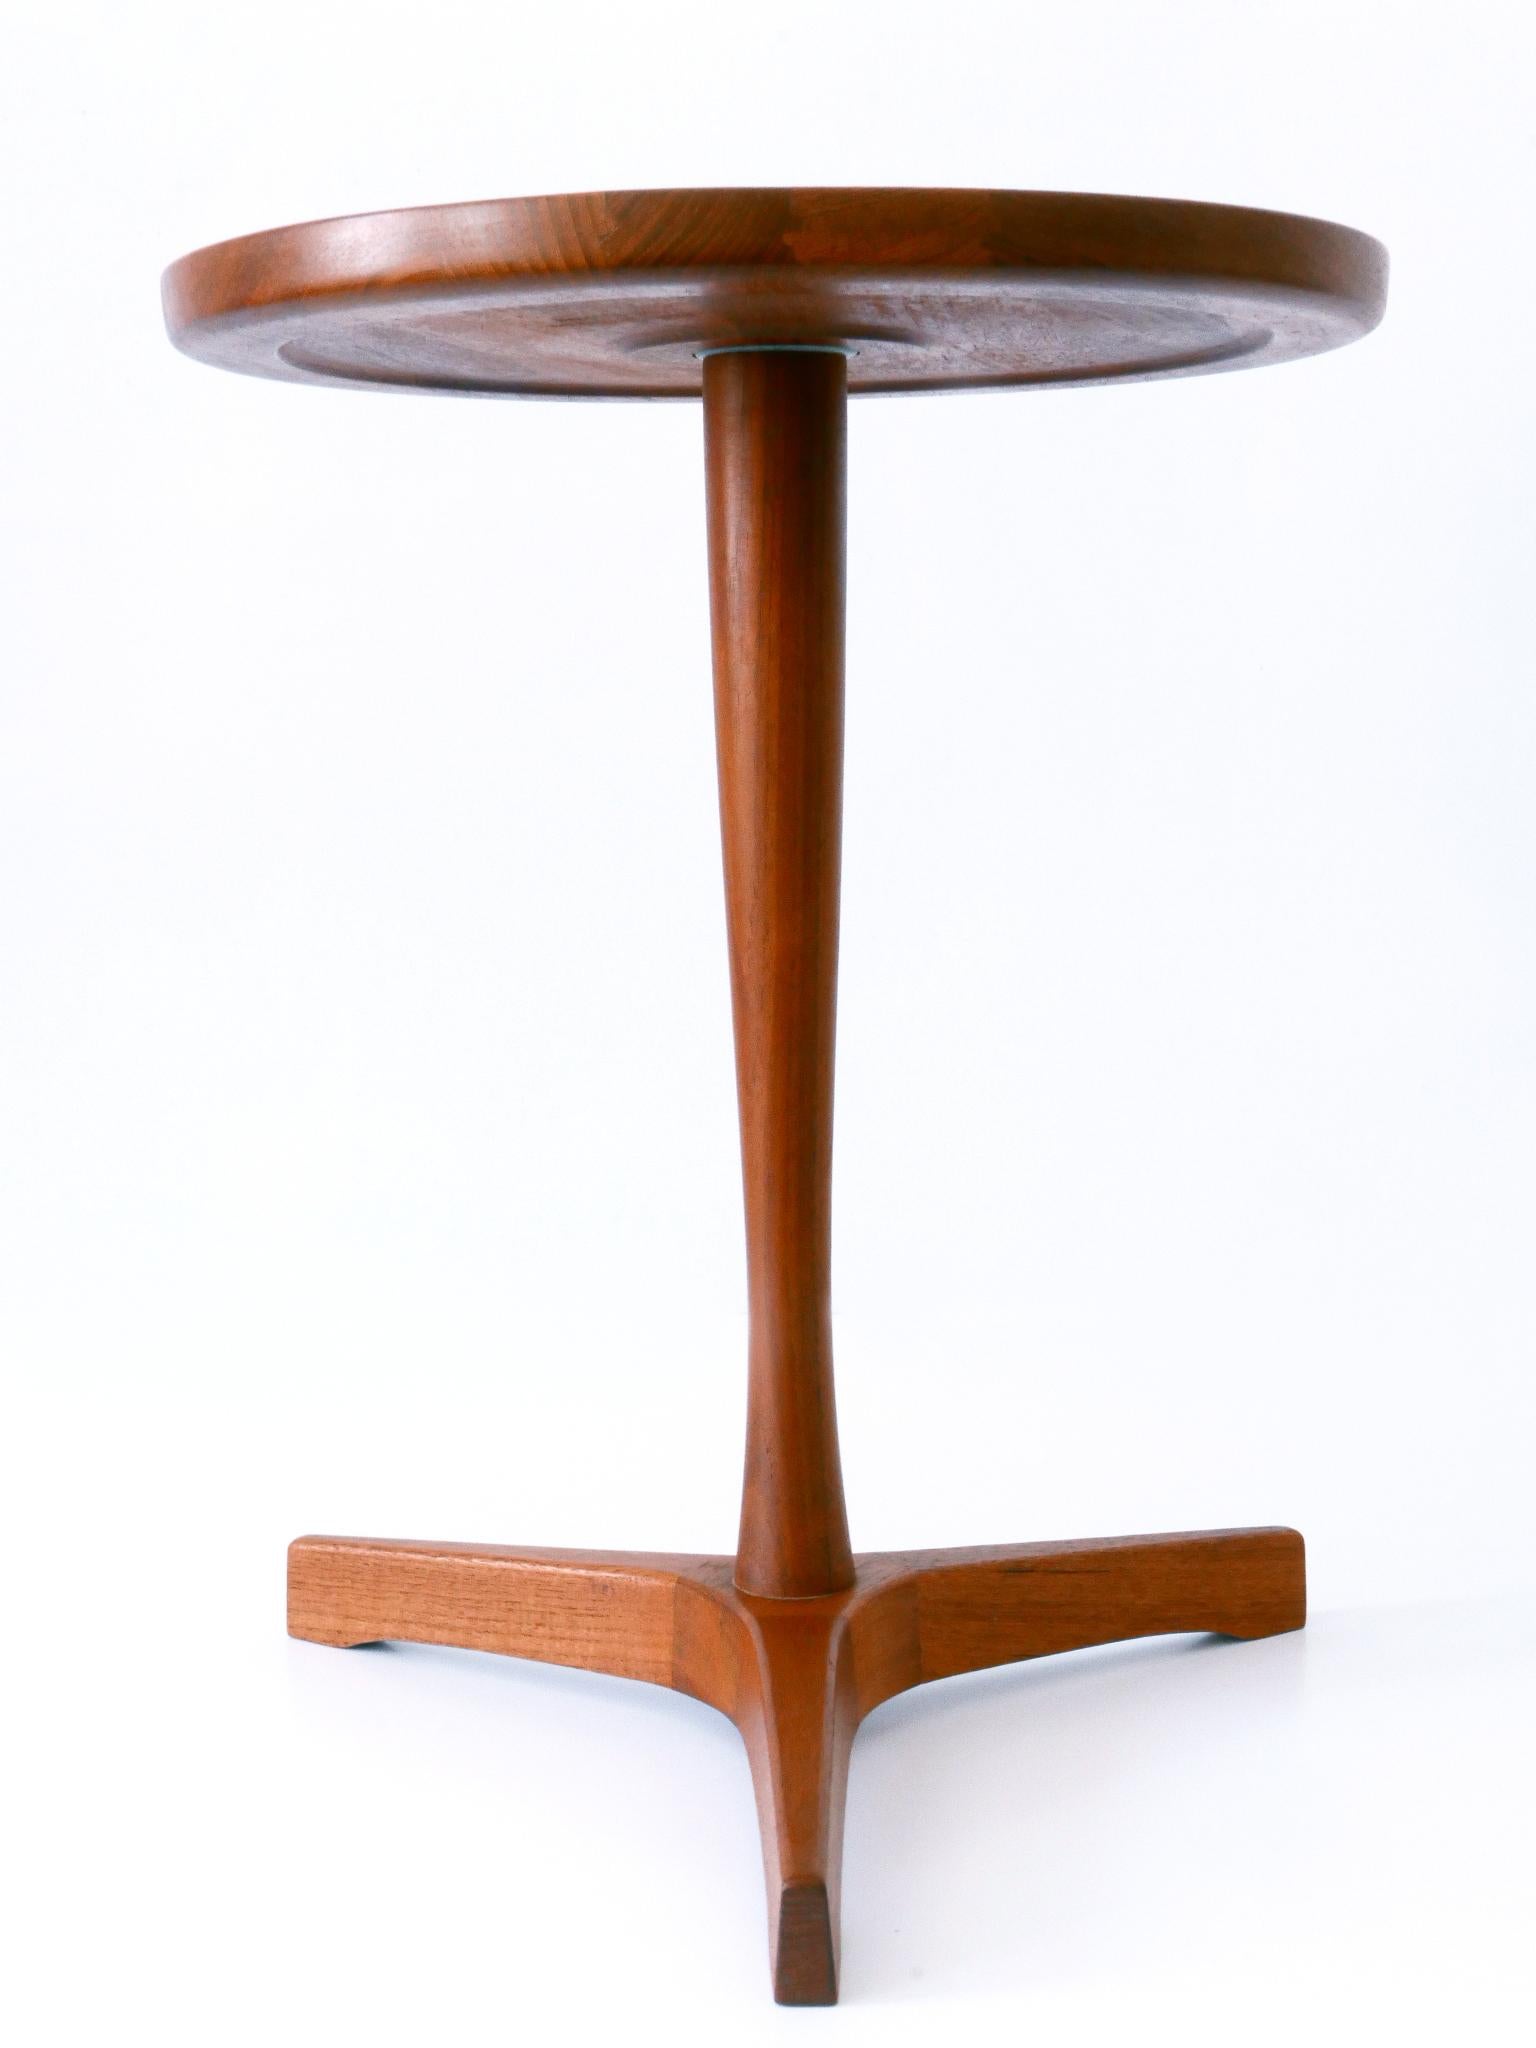 Mid-20th Century Elegant Mid-Century Modern Teak Side Table by Hans C. Andersen for Artek 1960s For Sale